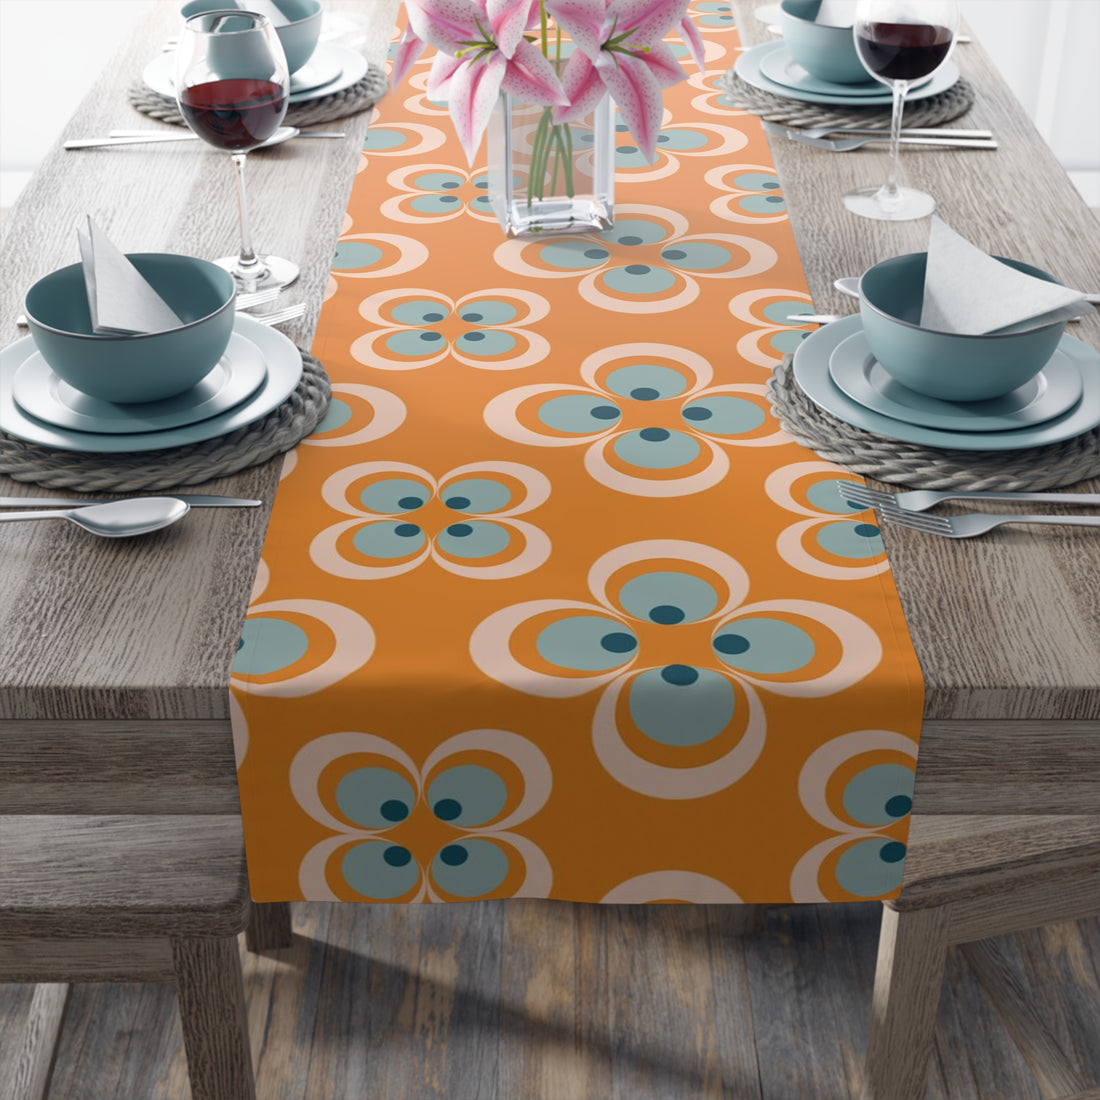 Mid Century Modern Table Runner, Retro Scandinavian Modern Danish Geometric Design, Orange, Blue Table Runner